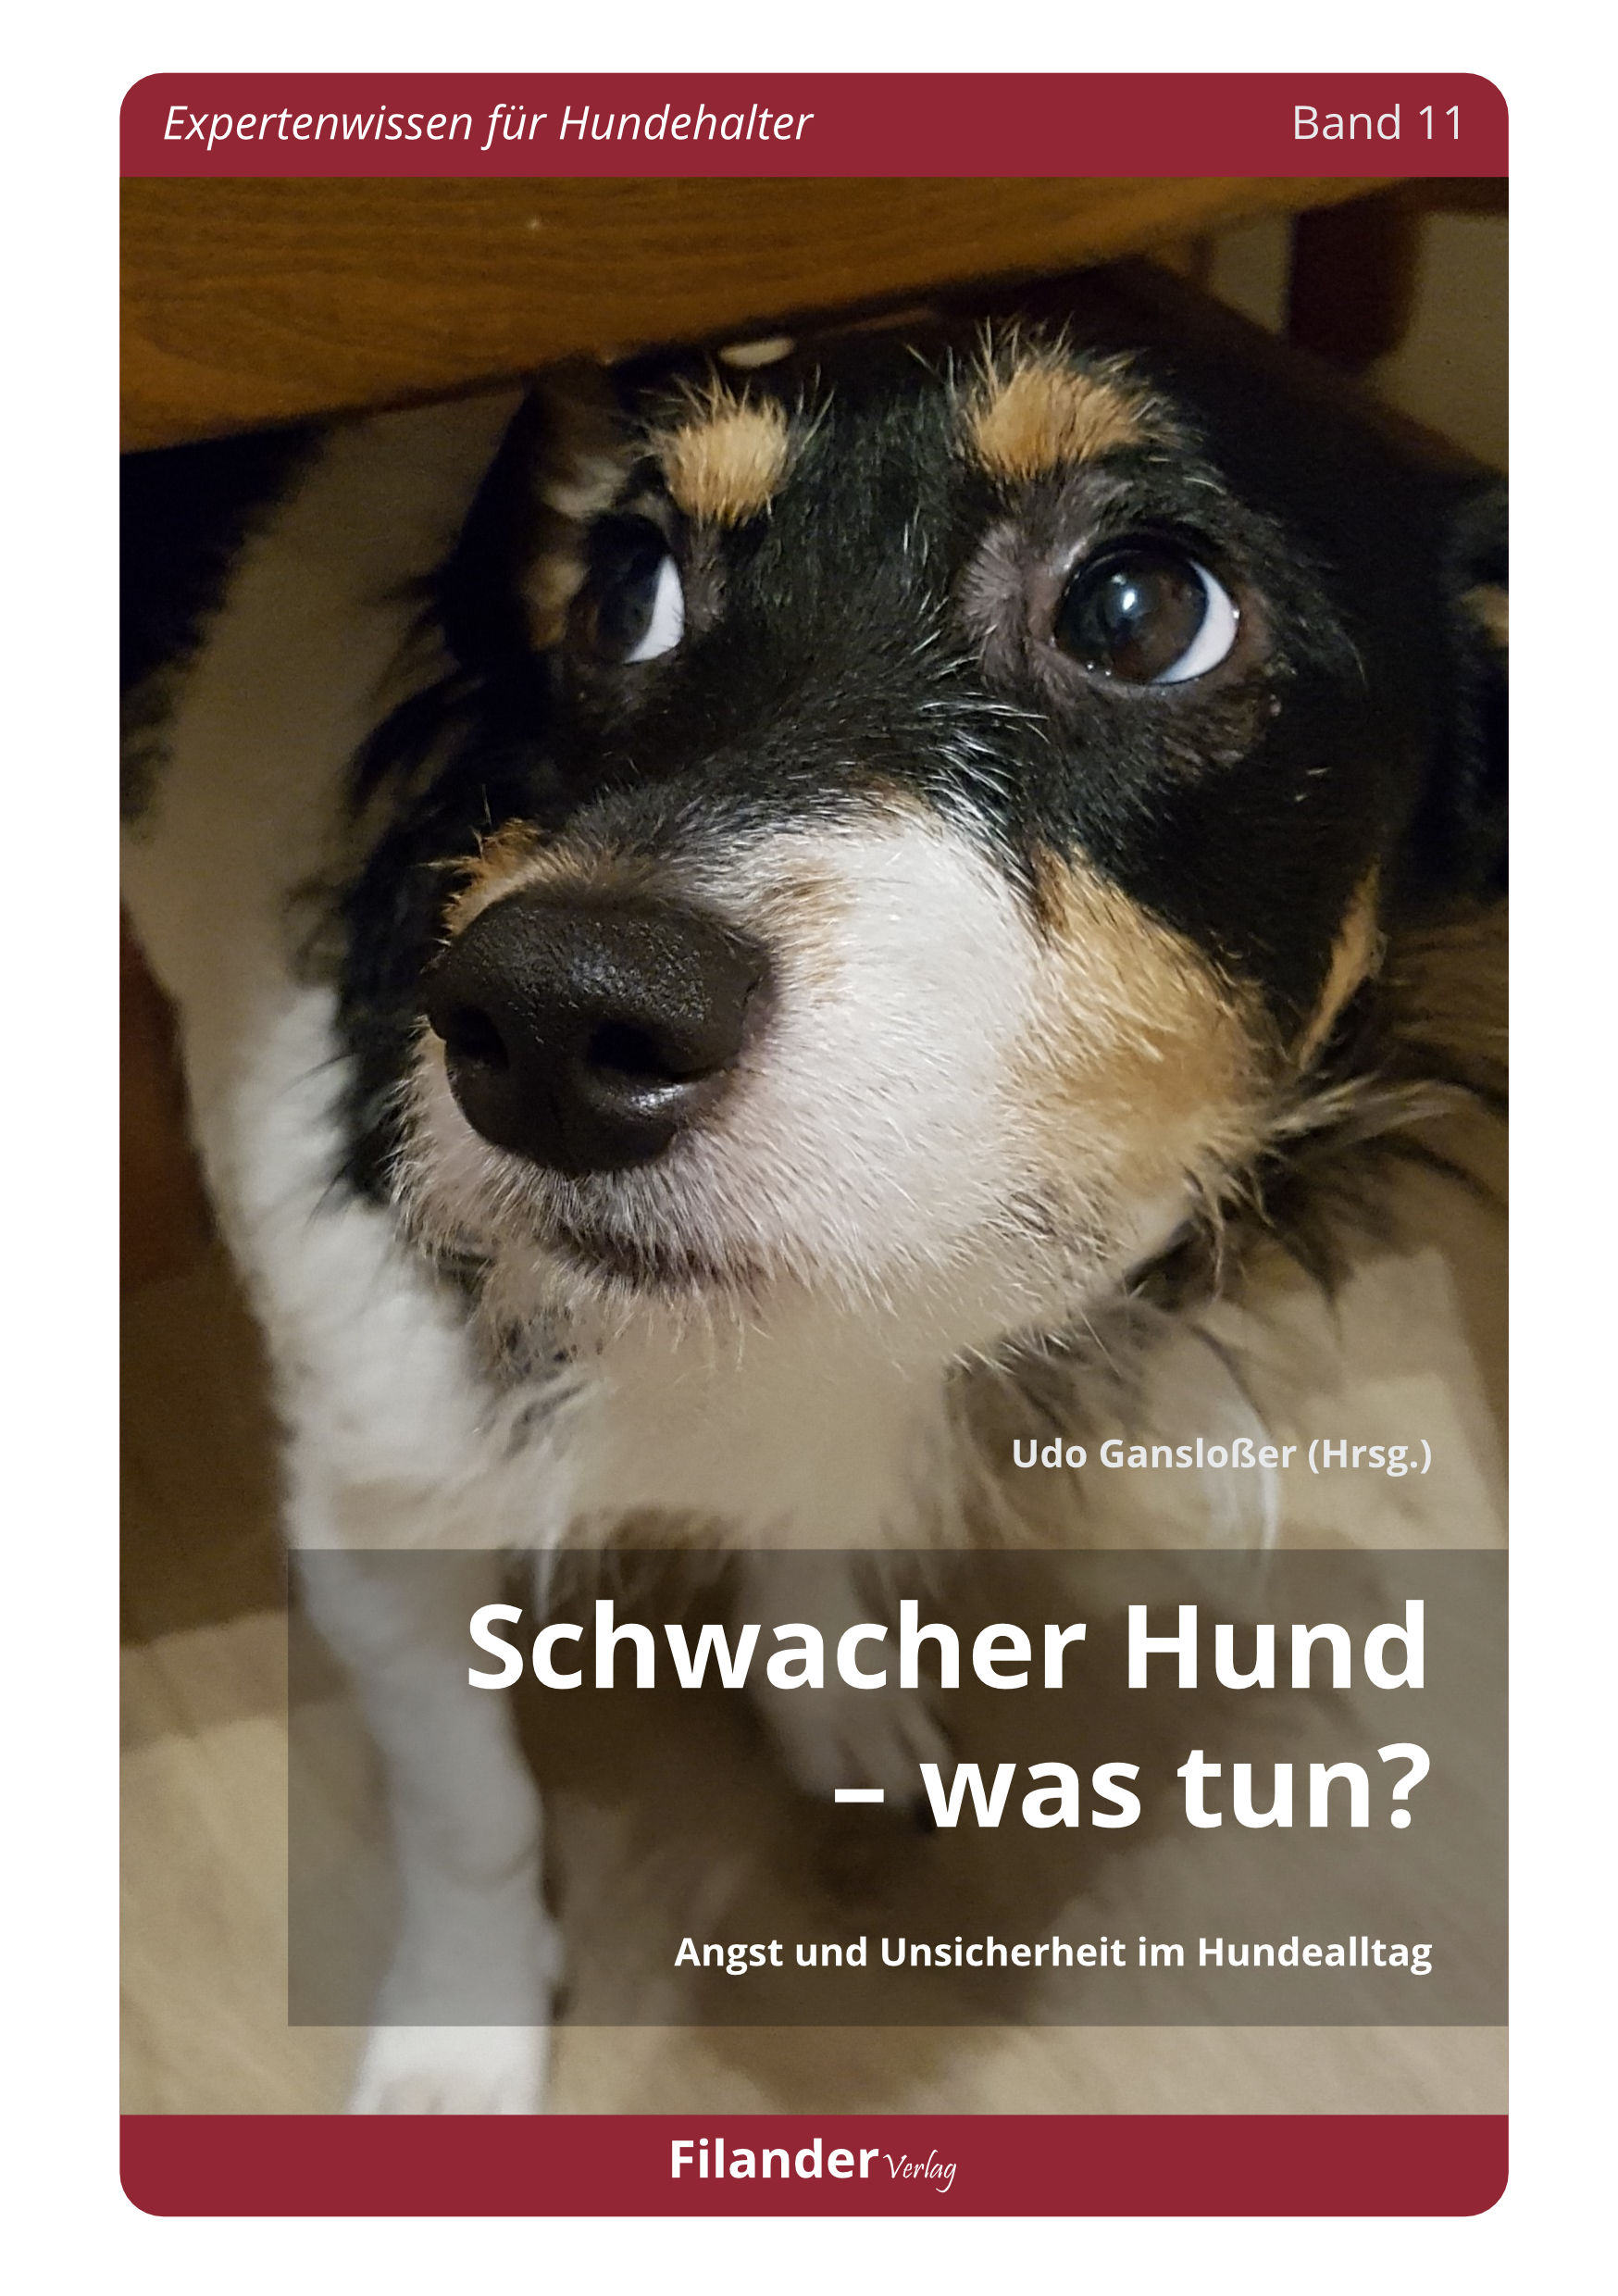 Schwacher Hund Was tun? Filander Verlag